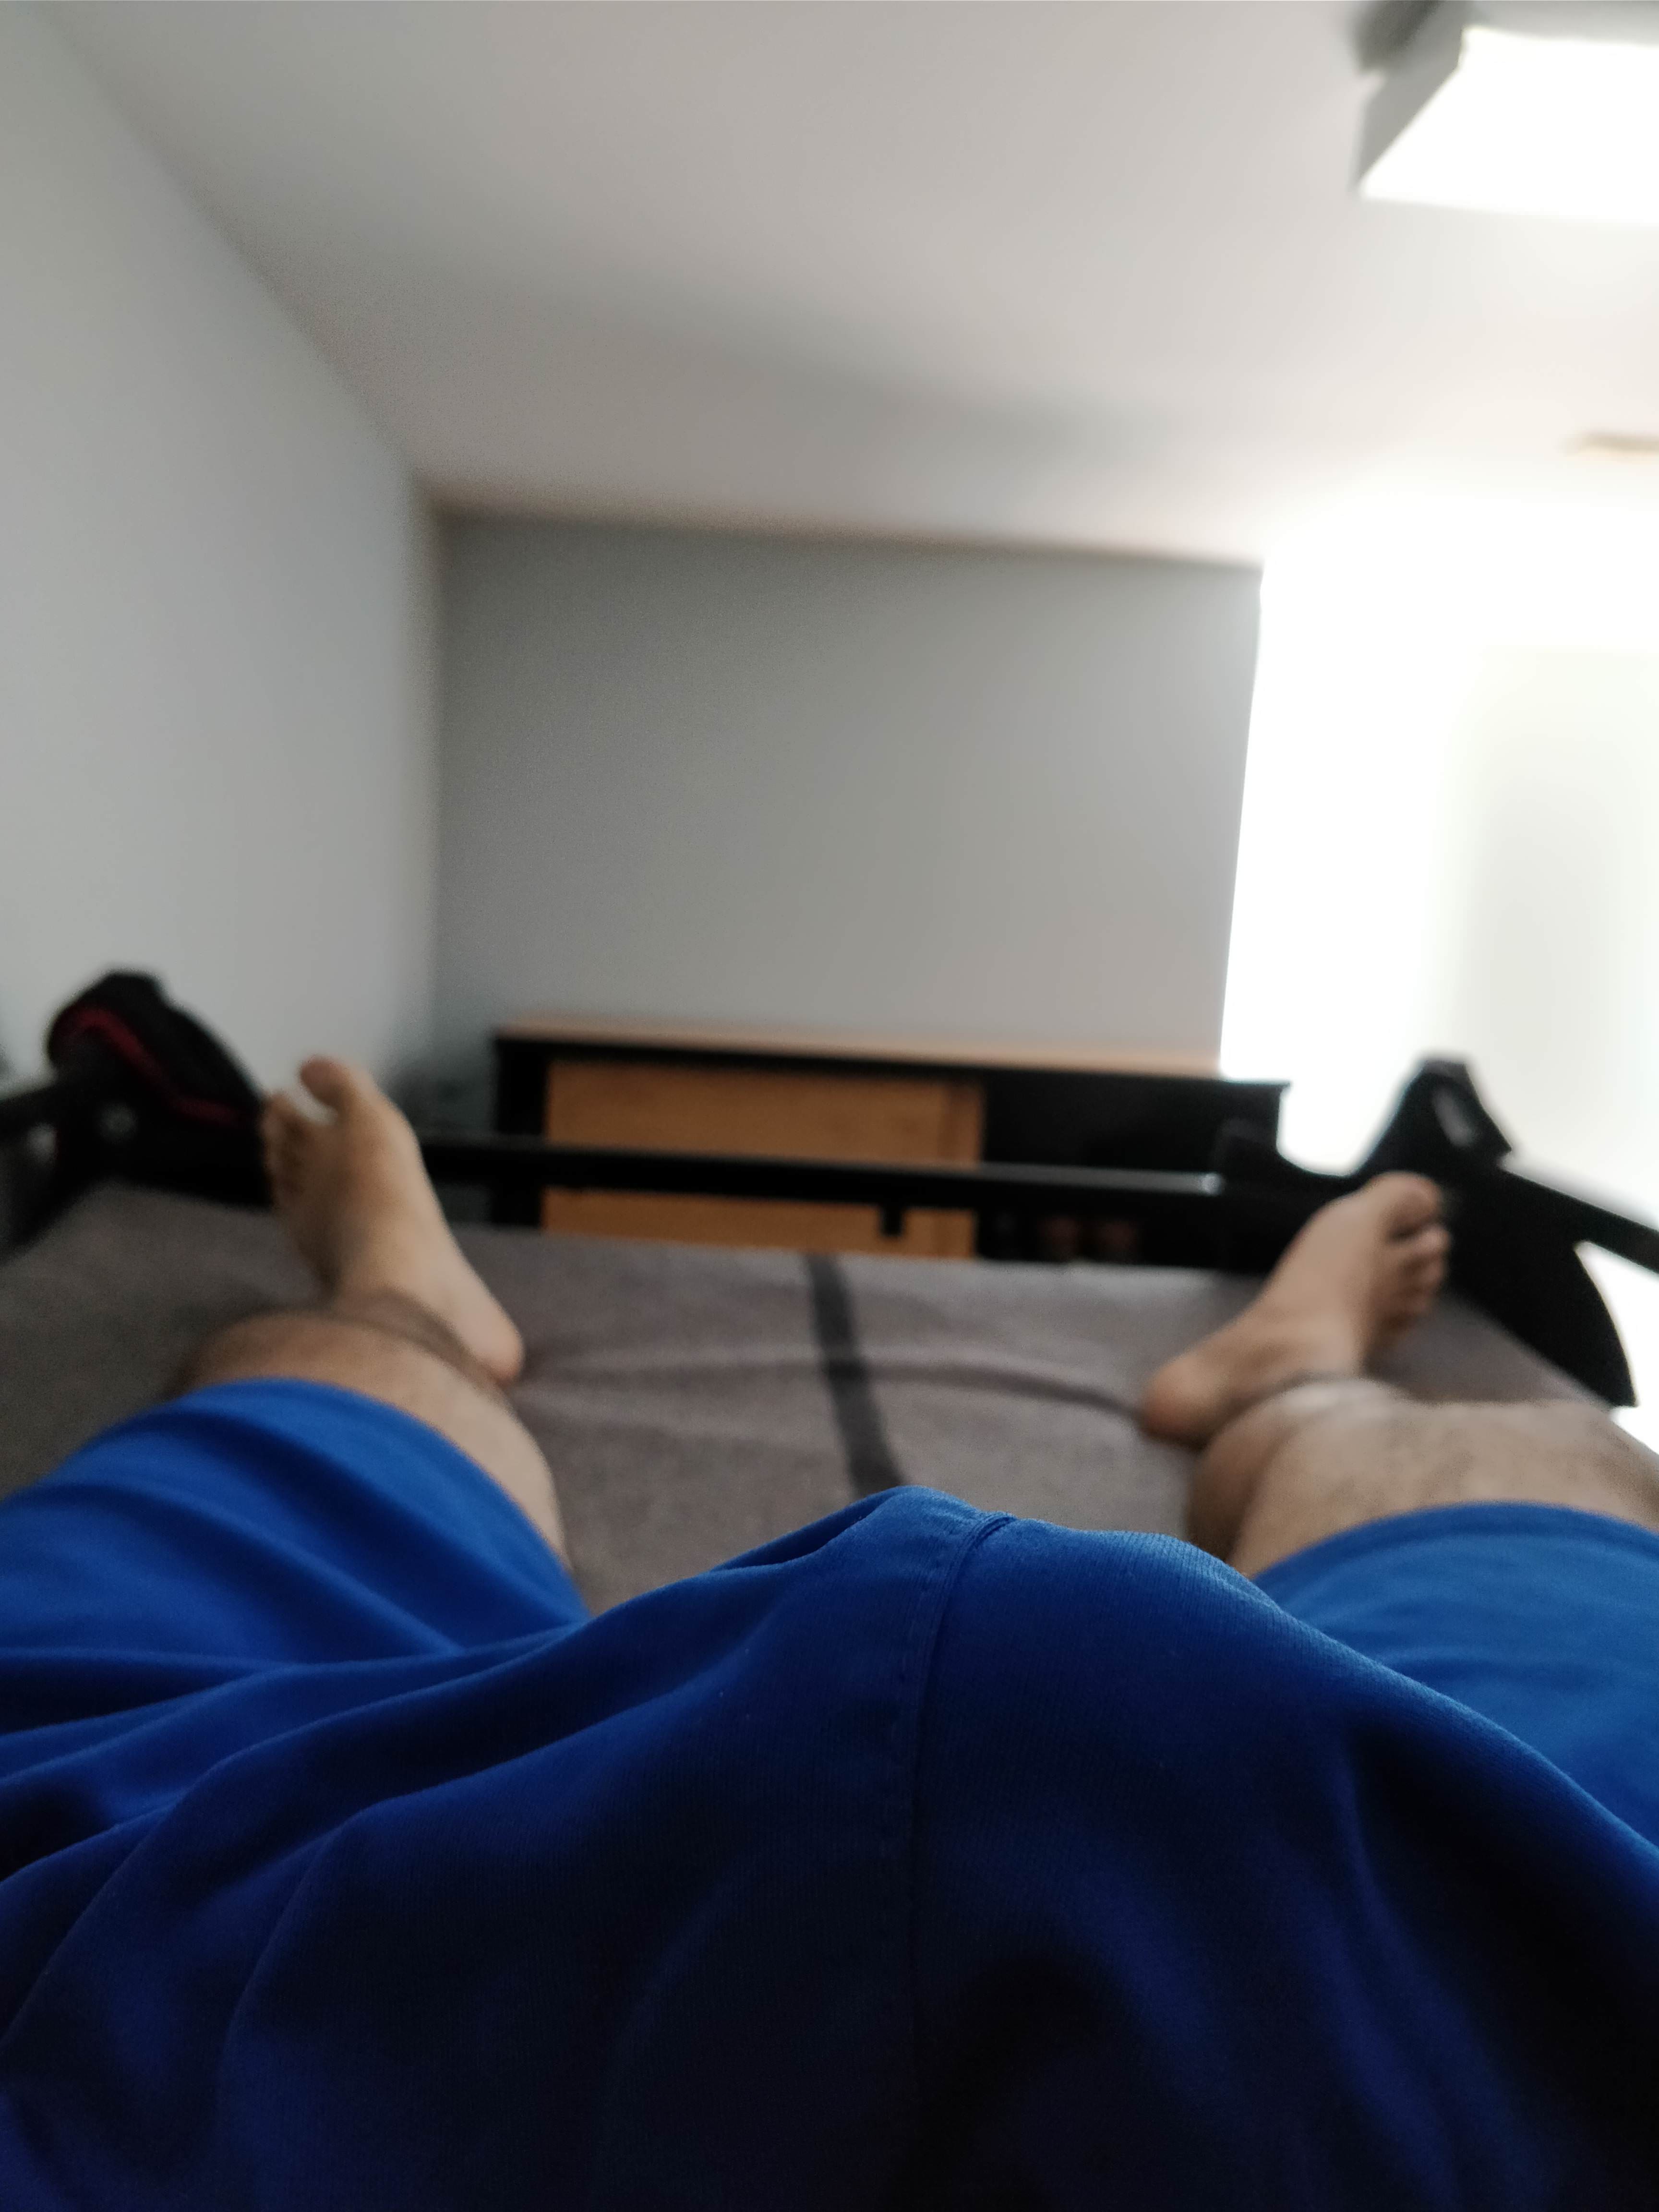 I woke up like this | Bulges  Porn | Hot XXX Gays